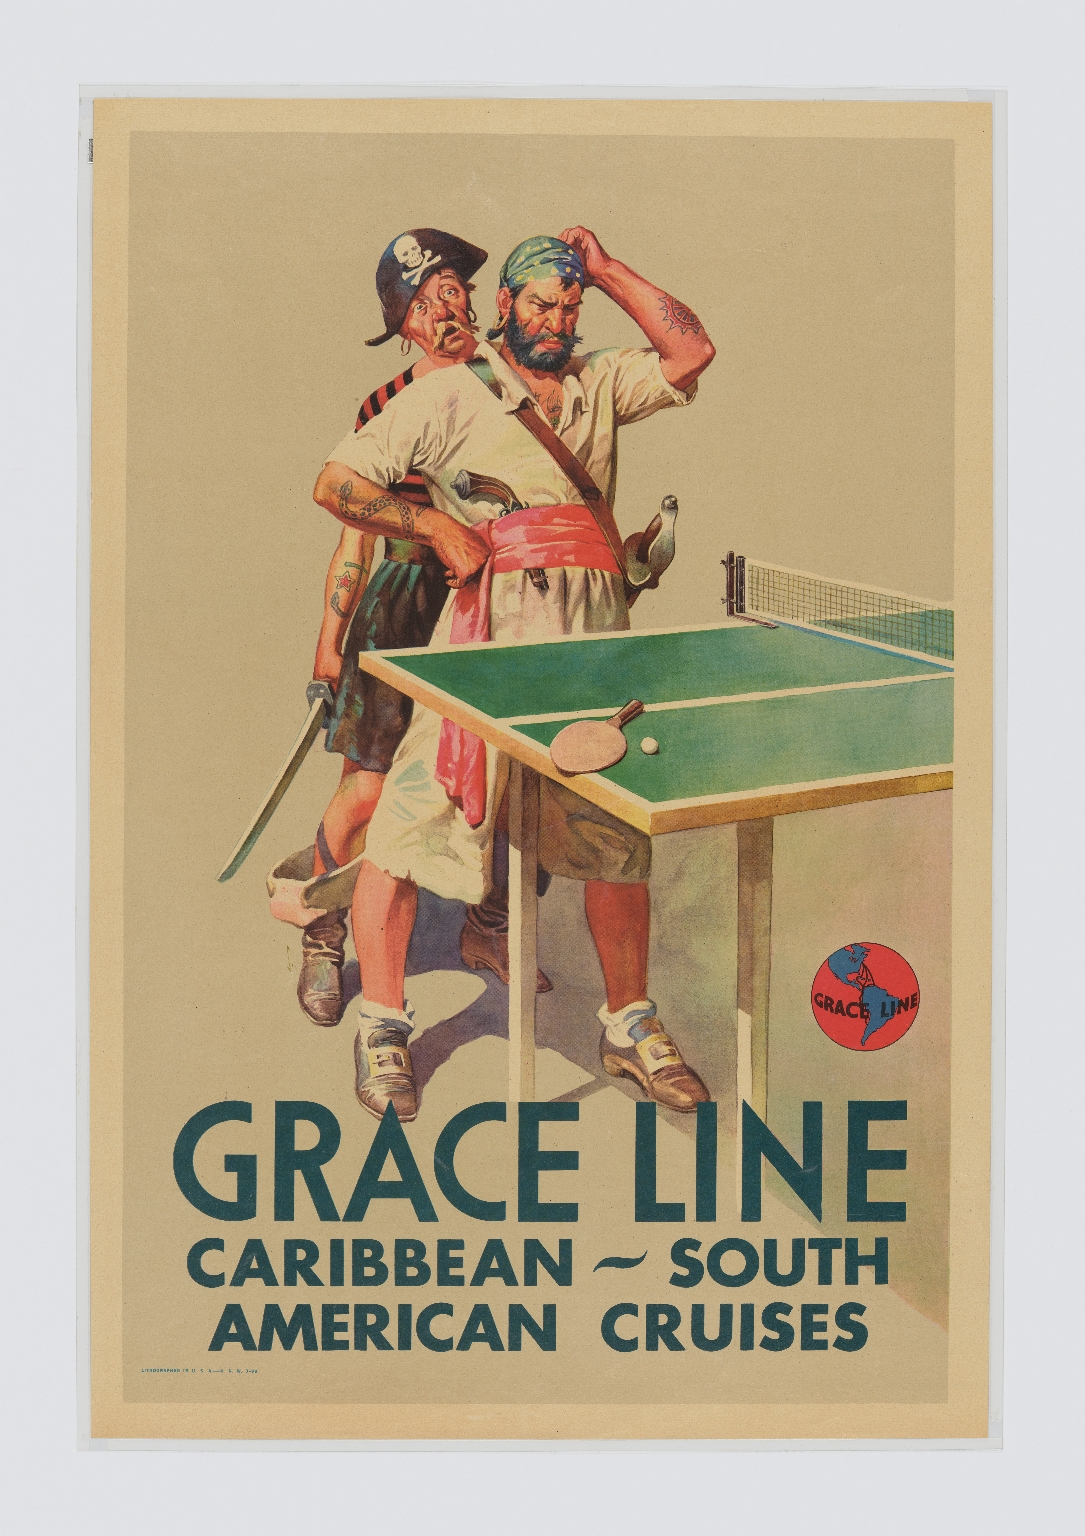 Grace line